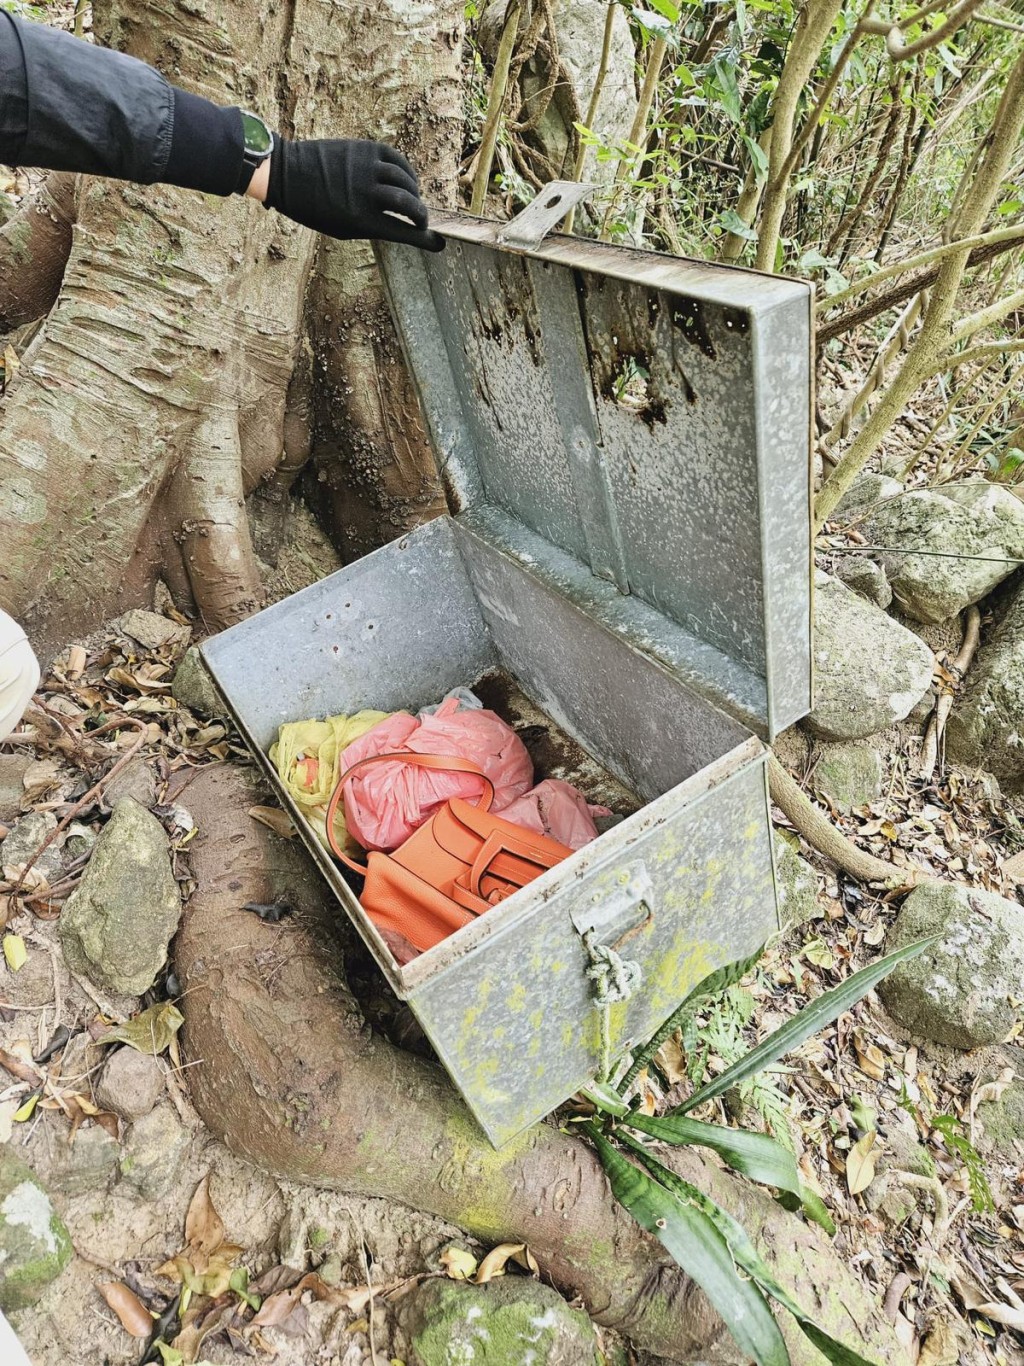 警方於近將軍澳村後山坡一個棄置鐵箱內檢獲一個手袋。警方提供